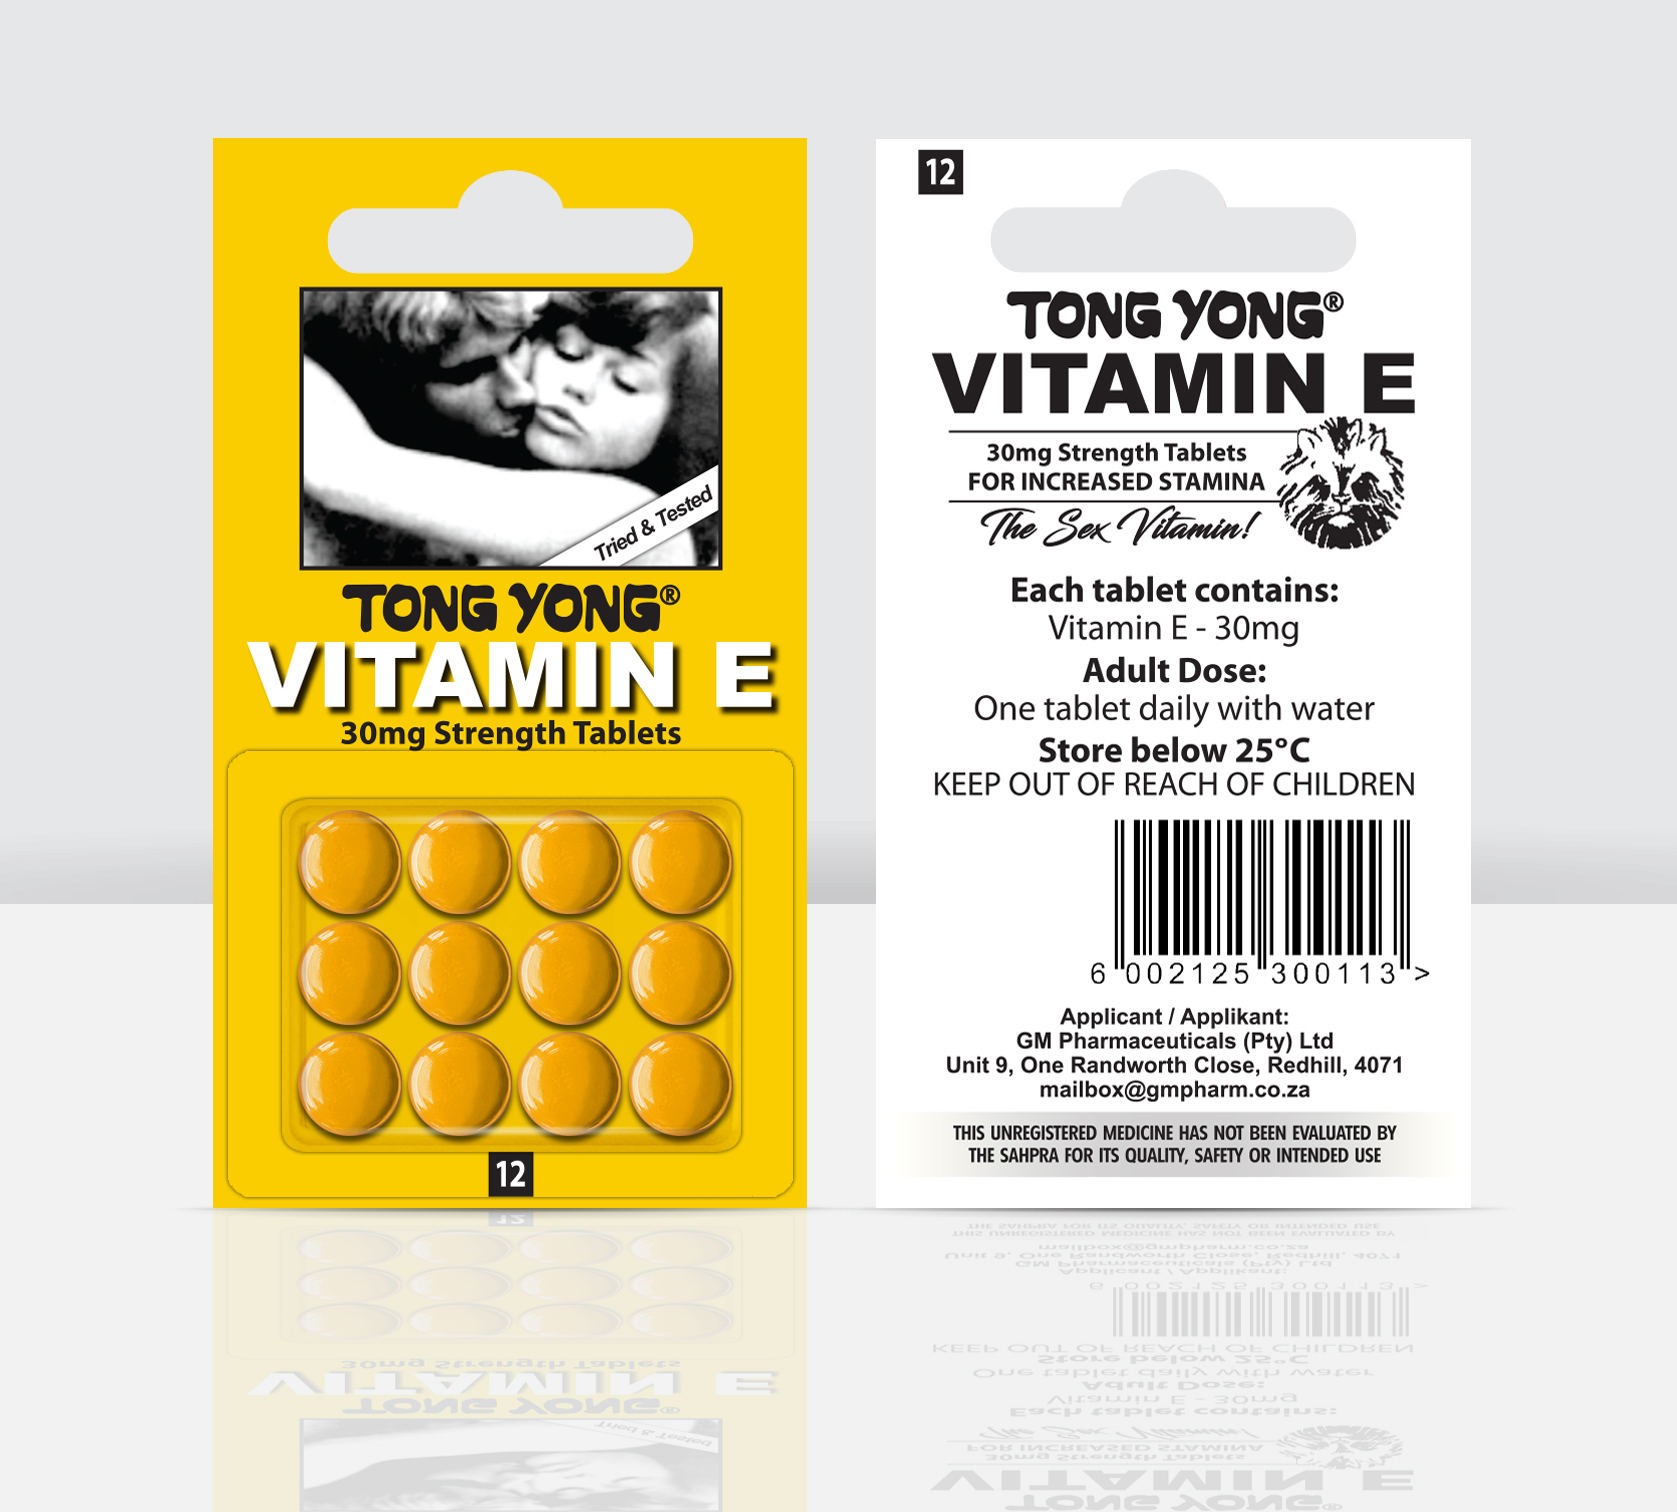 tong-yong-vitamin-e-12's